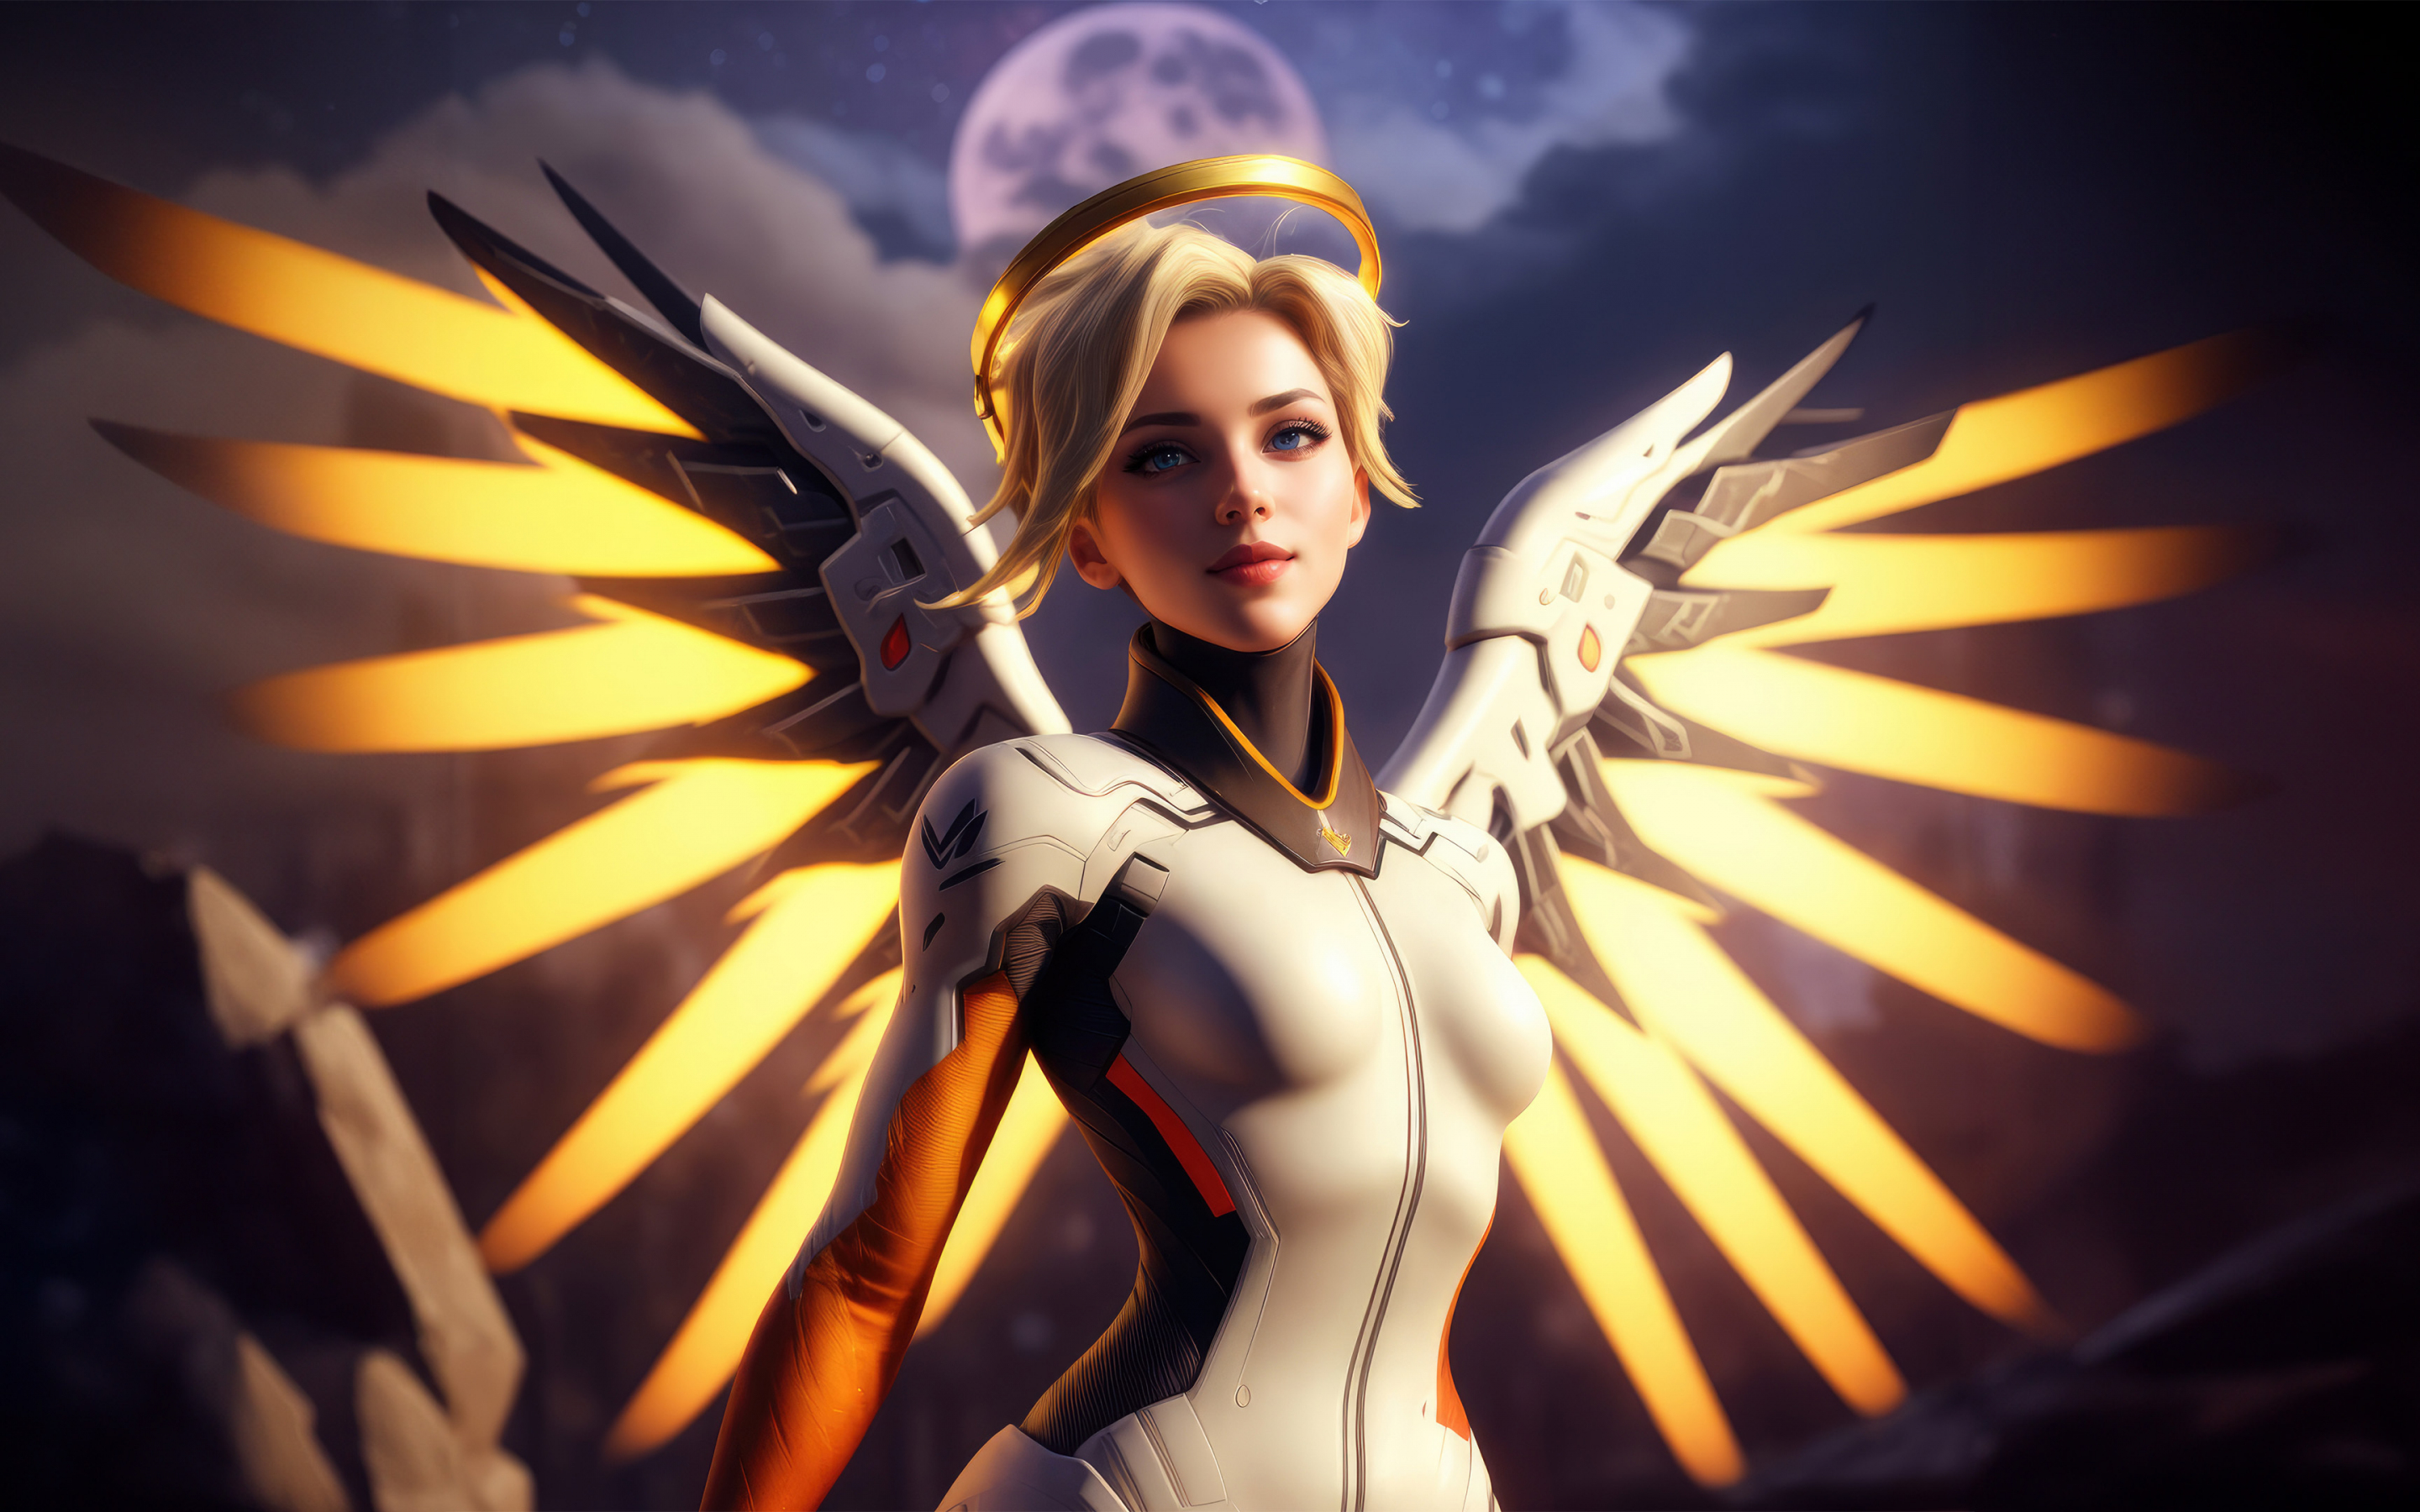 Mercy of Overwatch, The Swiss Angel, golden wings, 2880x1800 wallpaper